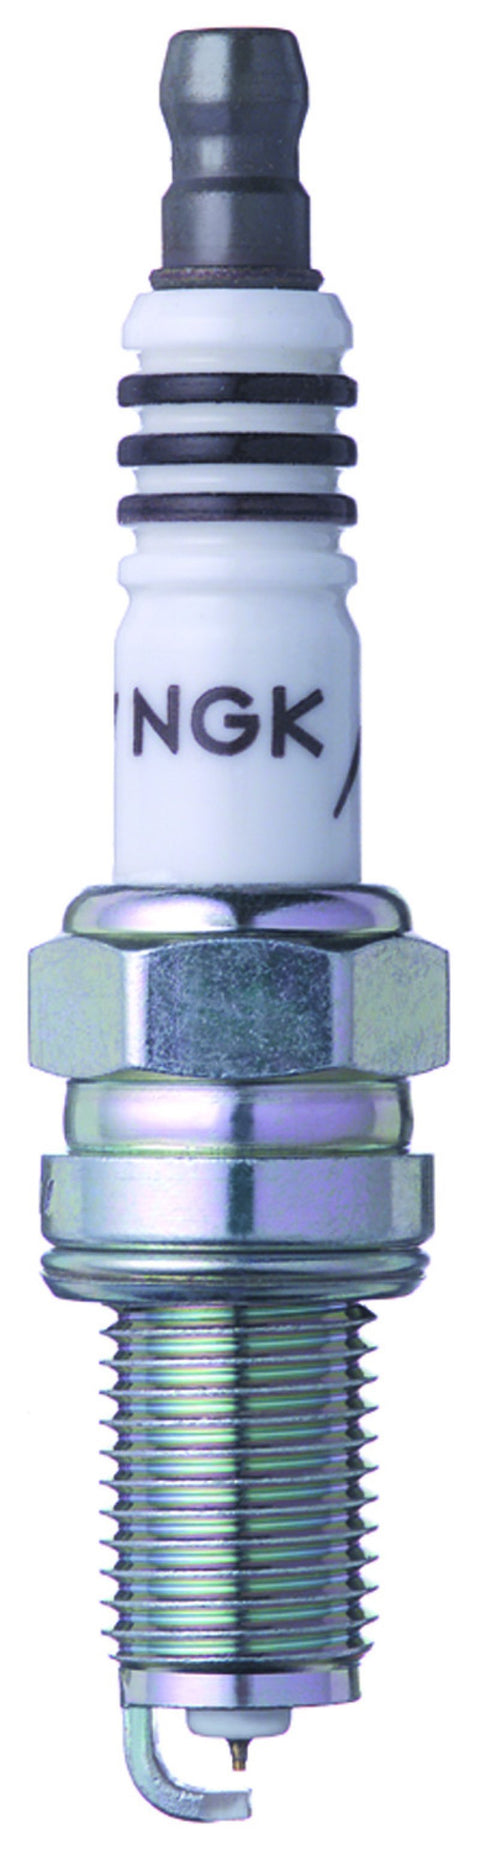 NGK Iridium IX Spark Plug Box of 4 (2316)